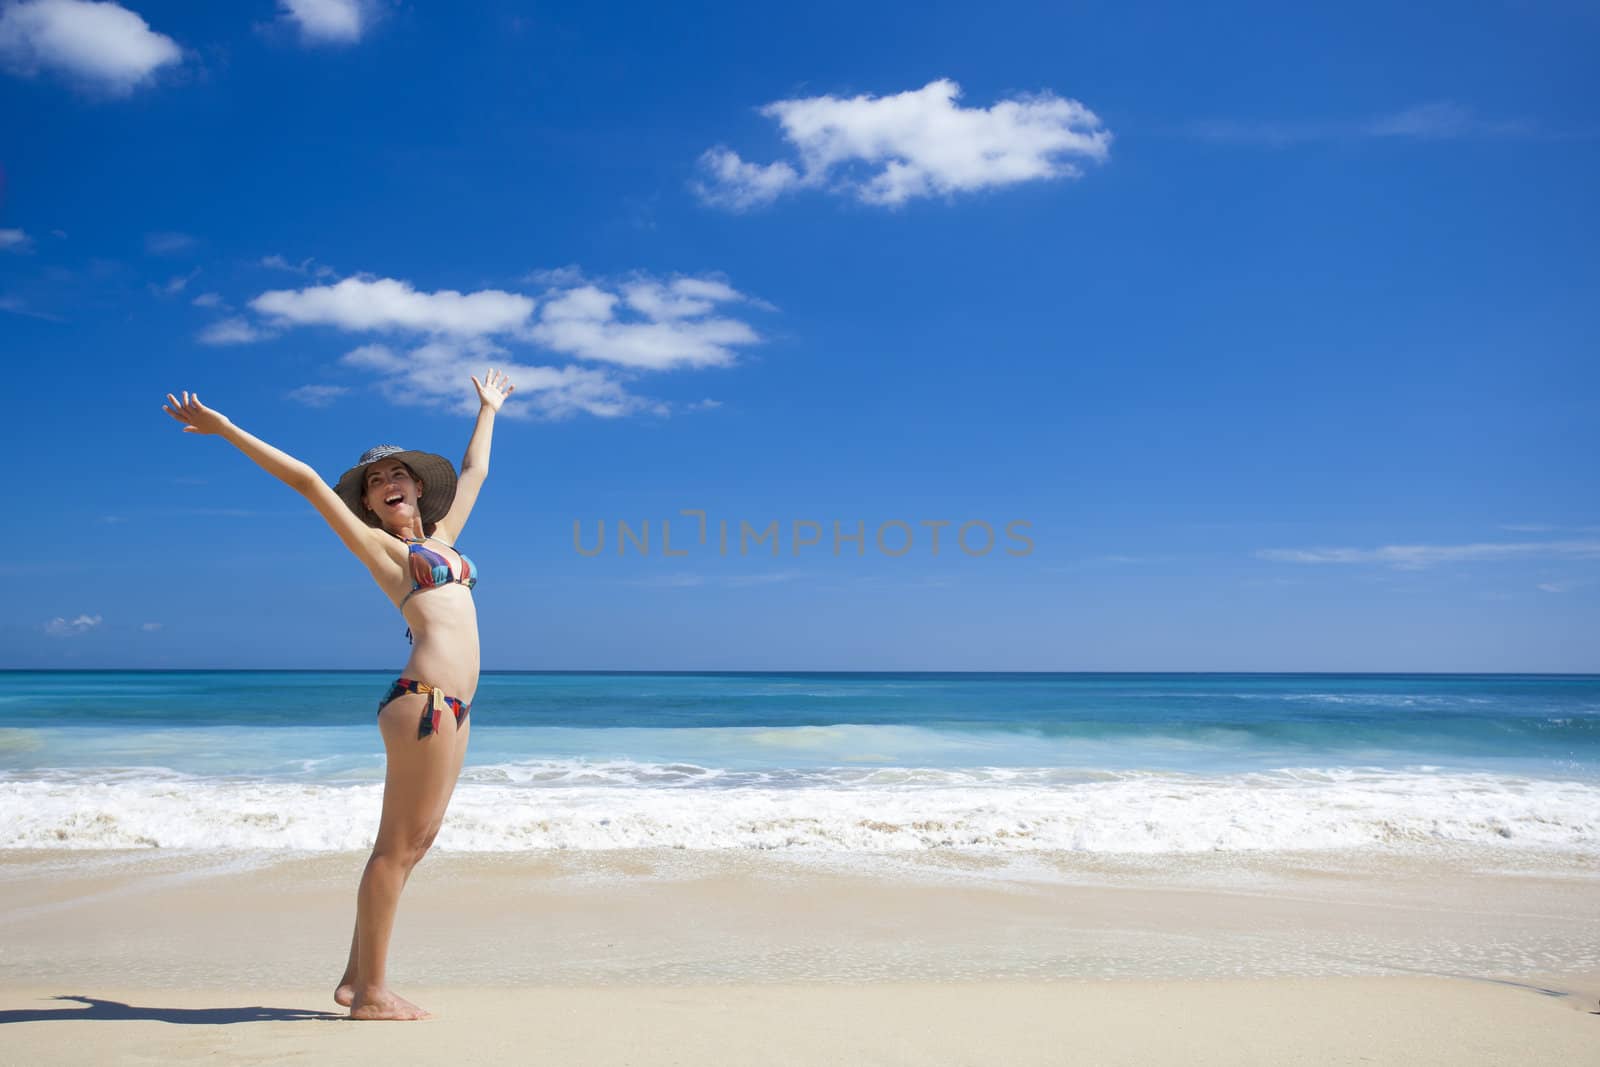 Beautiful young woman enjoying the summer in a tropical beach